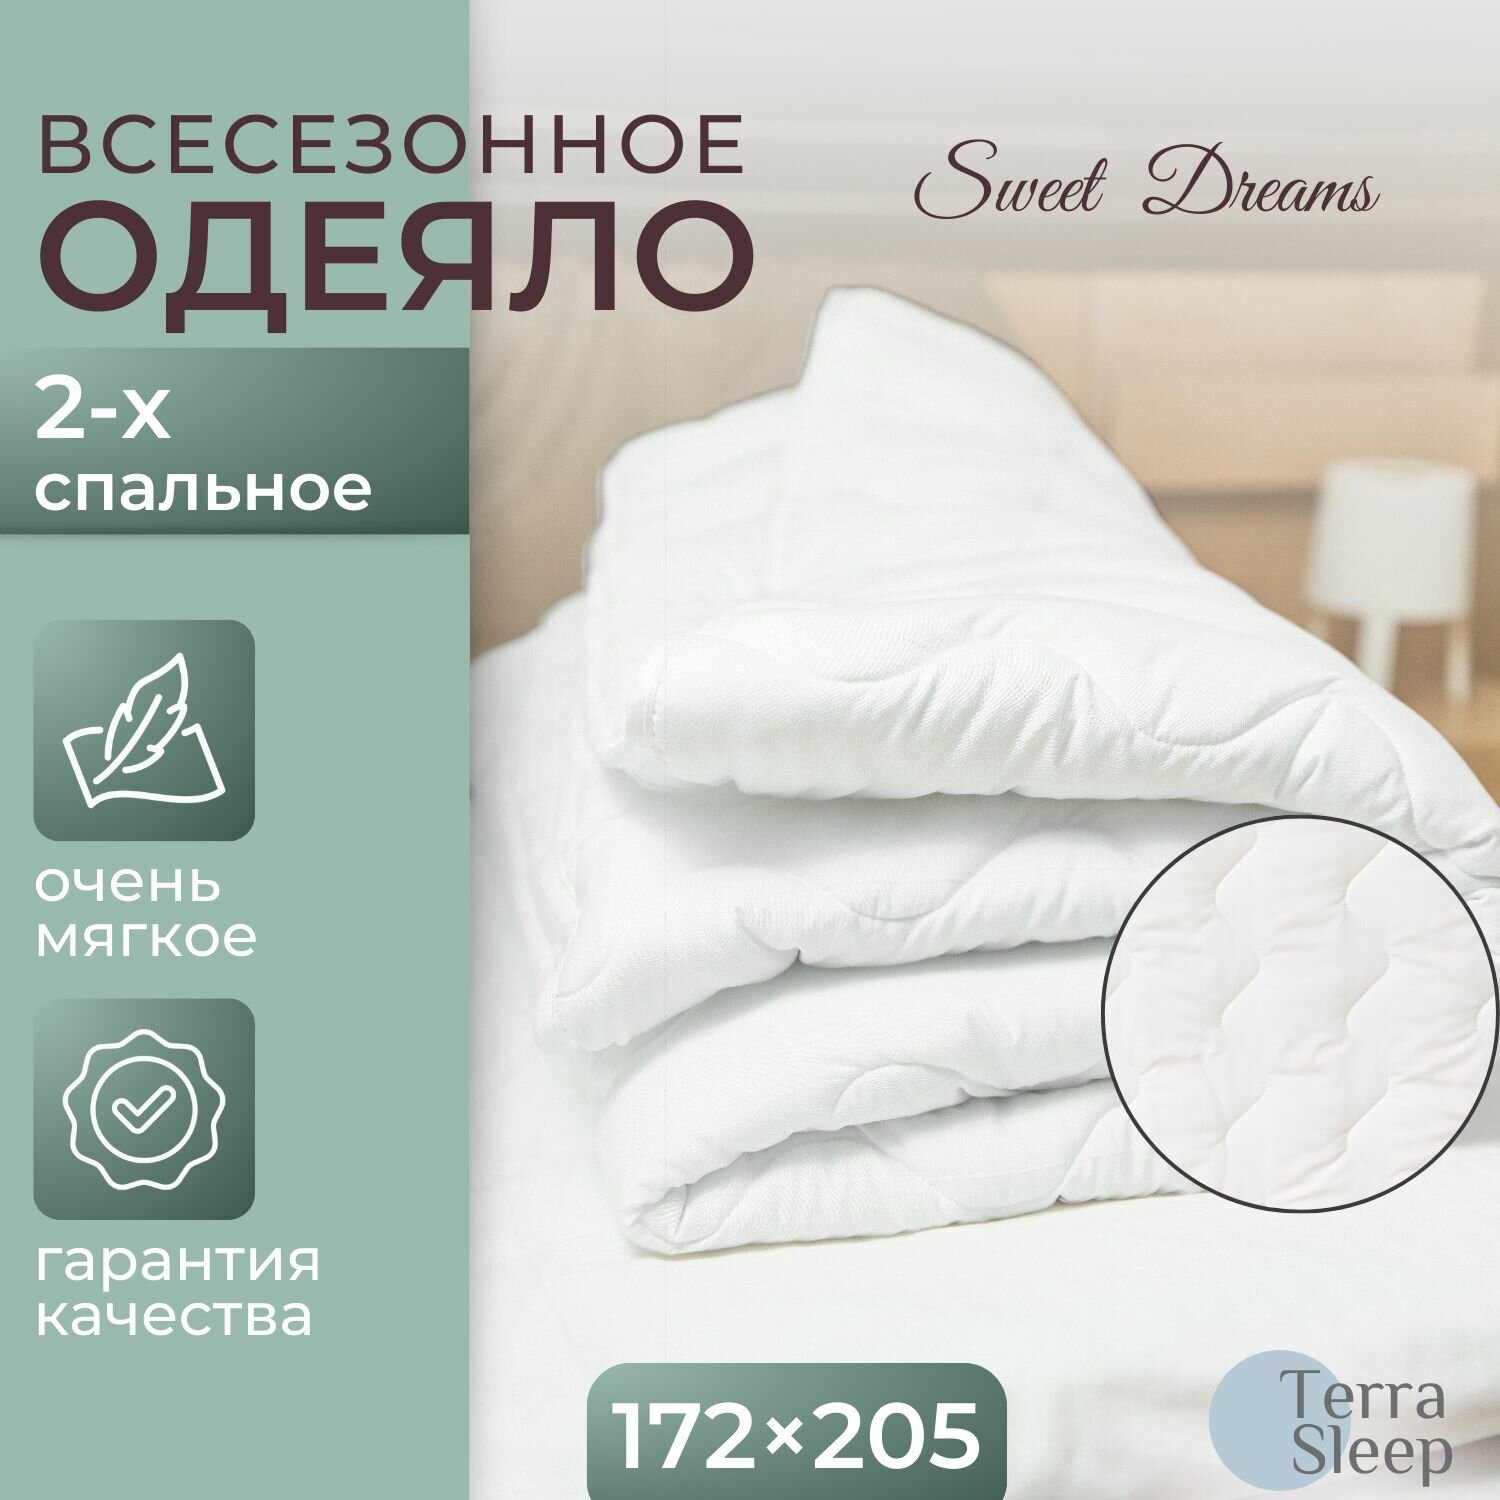 Одеяло Sweet Dreams 2 спальное 172х205 см всесезонное облегченное гипоаллергенный наполнитель Ютфайбер декоративная стежка большая волна 150 г/м2